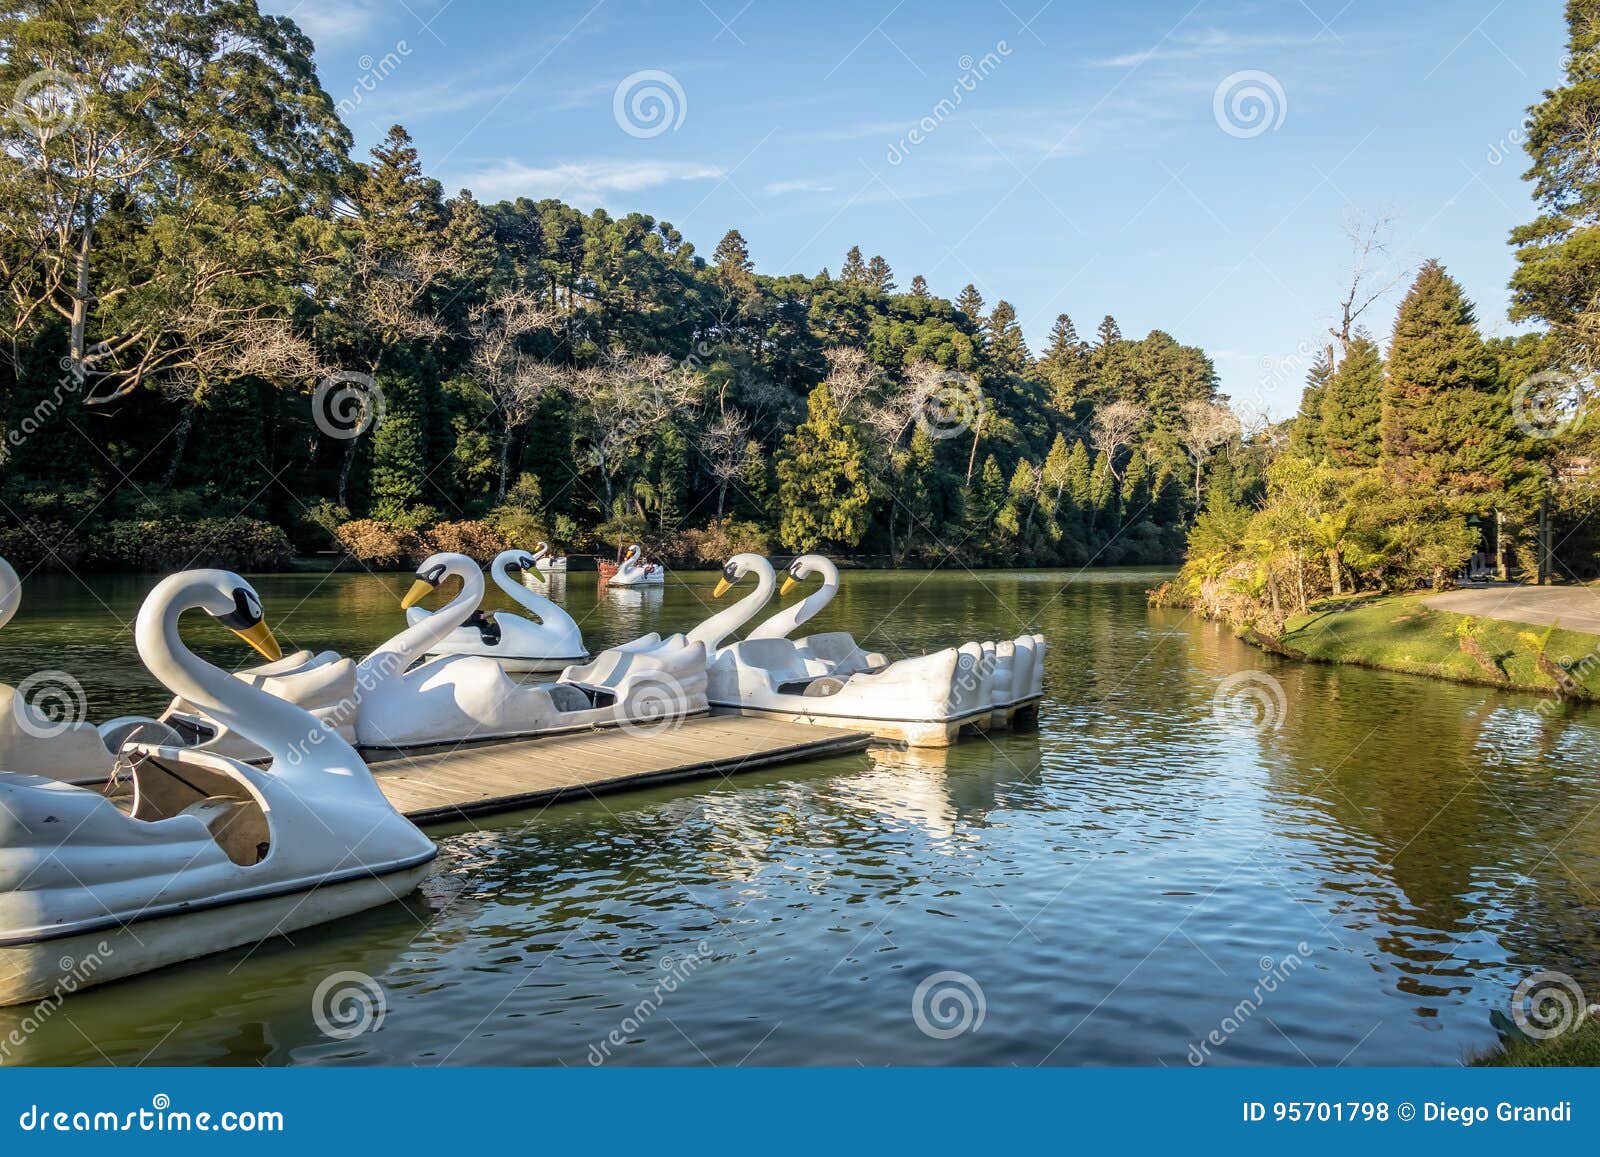 lago negro black lake with swan pedal boats - gramado, rio grande do sul, brazil